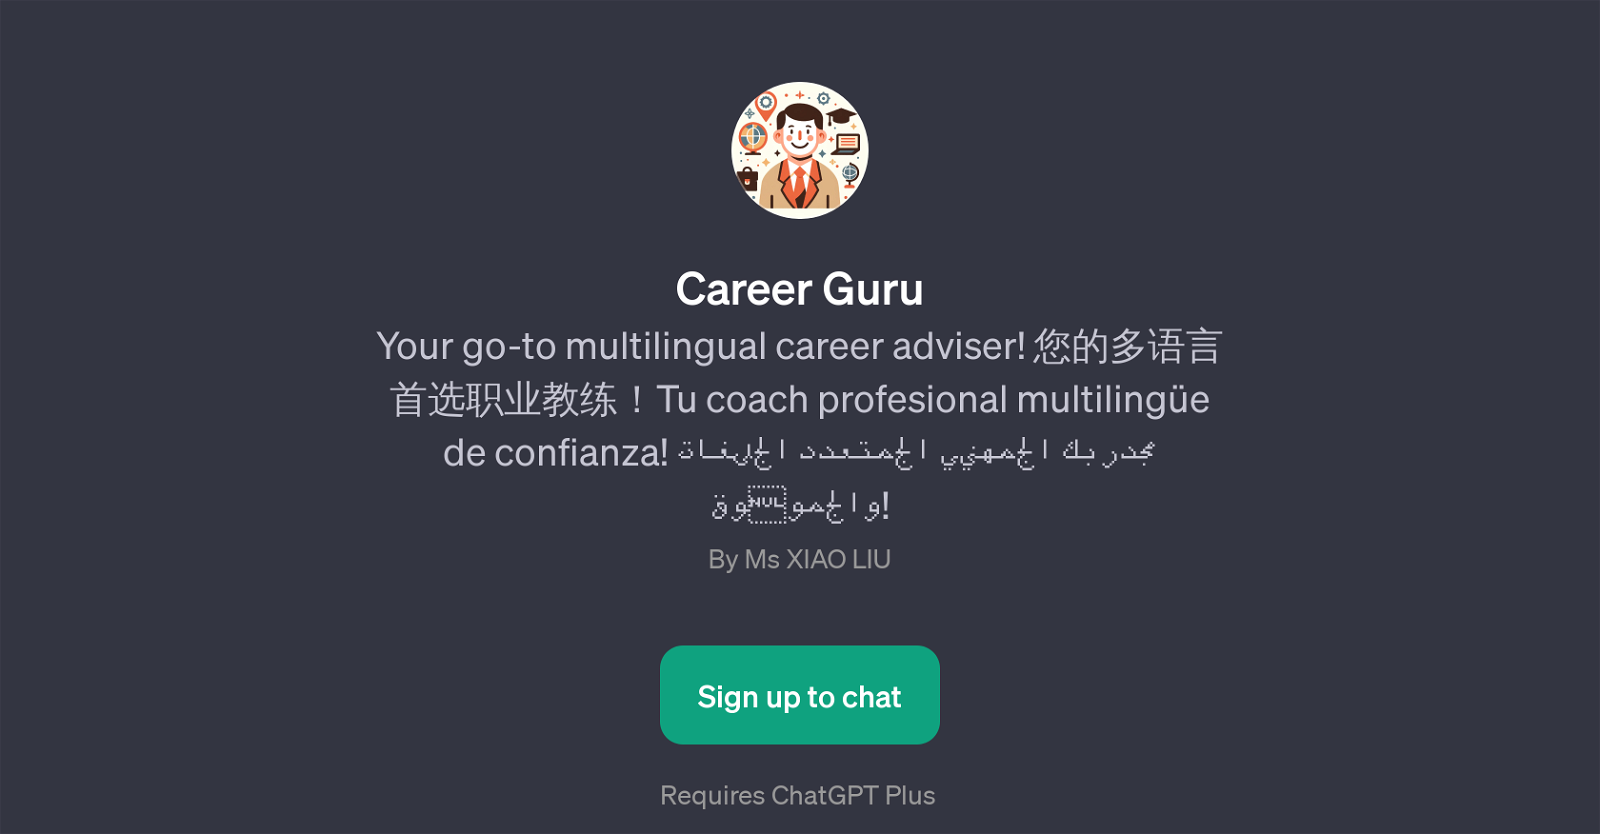 Career Guru website